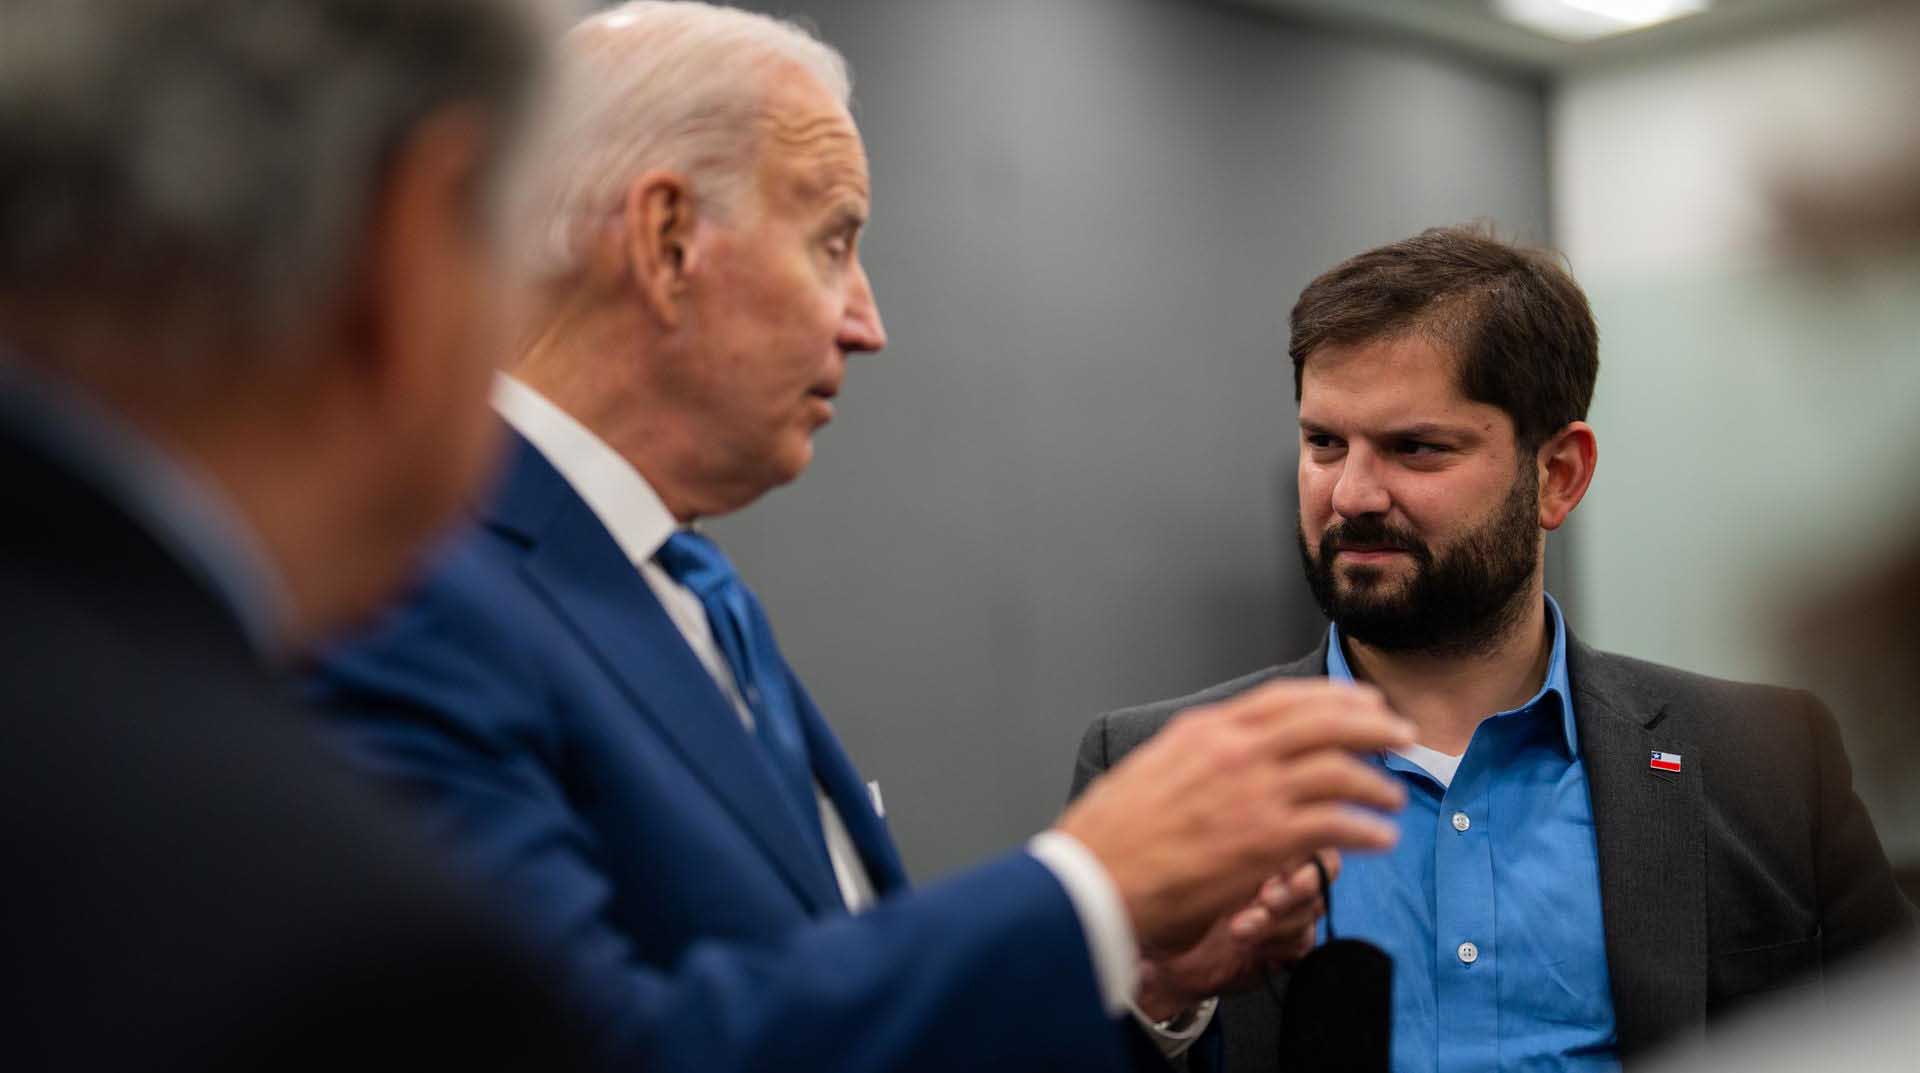 Fotografía cedida hoy por la Presidencia de Chile que muestra al mandatario chileno, Gabriel Boric, mientras habla con su similar estadounidense, Joe Biden, en el marco de la IX Cumbre de las Américas en Los Ángeles (EE.UU). Foto: EFE.